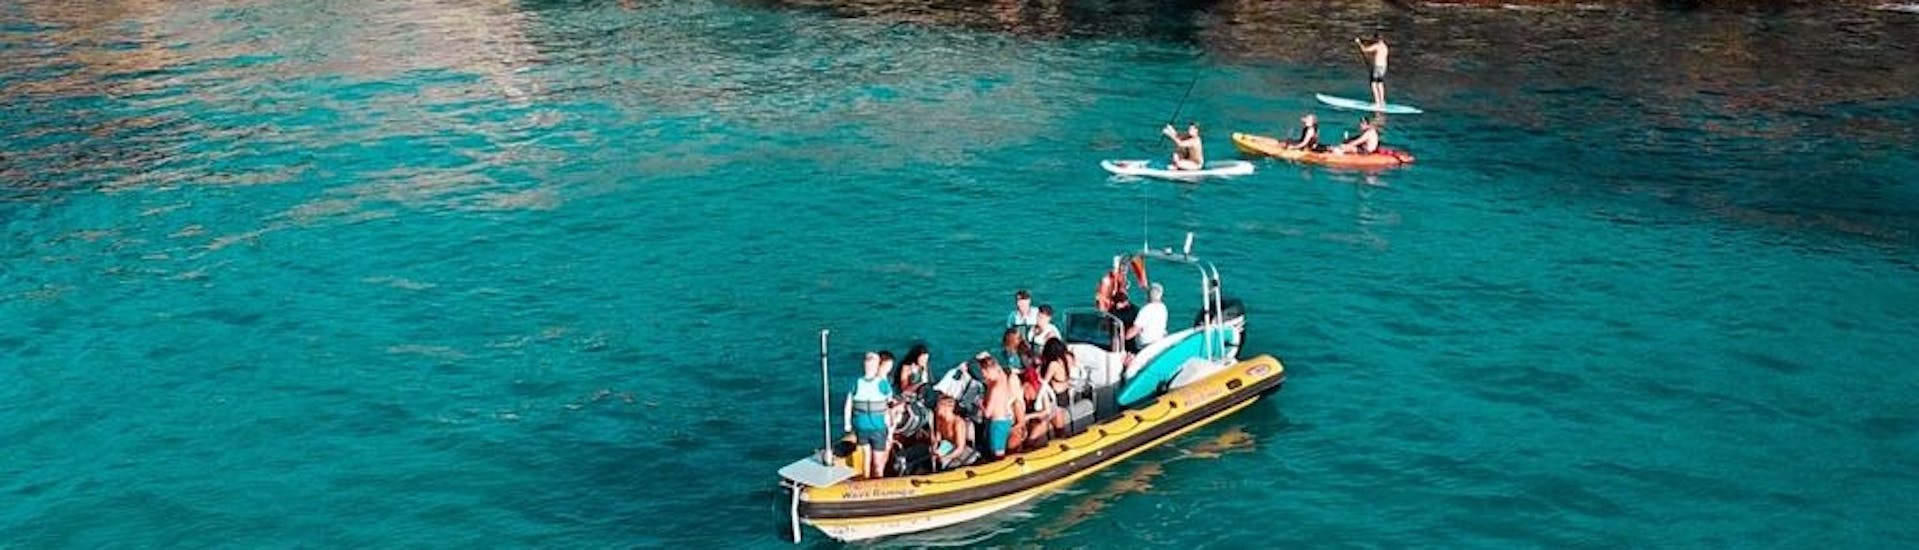 Teilnehmer auf einem Schnellboot mit Badestopp im türkisfarbenen Wasser der Bucht von Alcudia während einer Bootstour von Can Picafort zum Naturpark Llevant mit North Coast Adventure Mallorca.